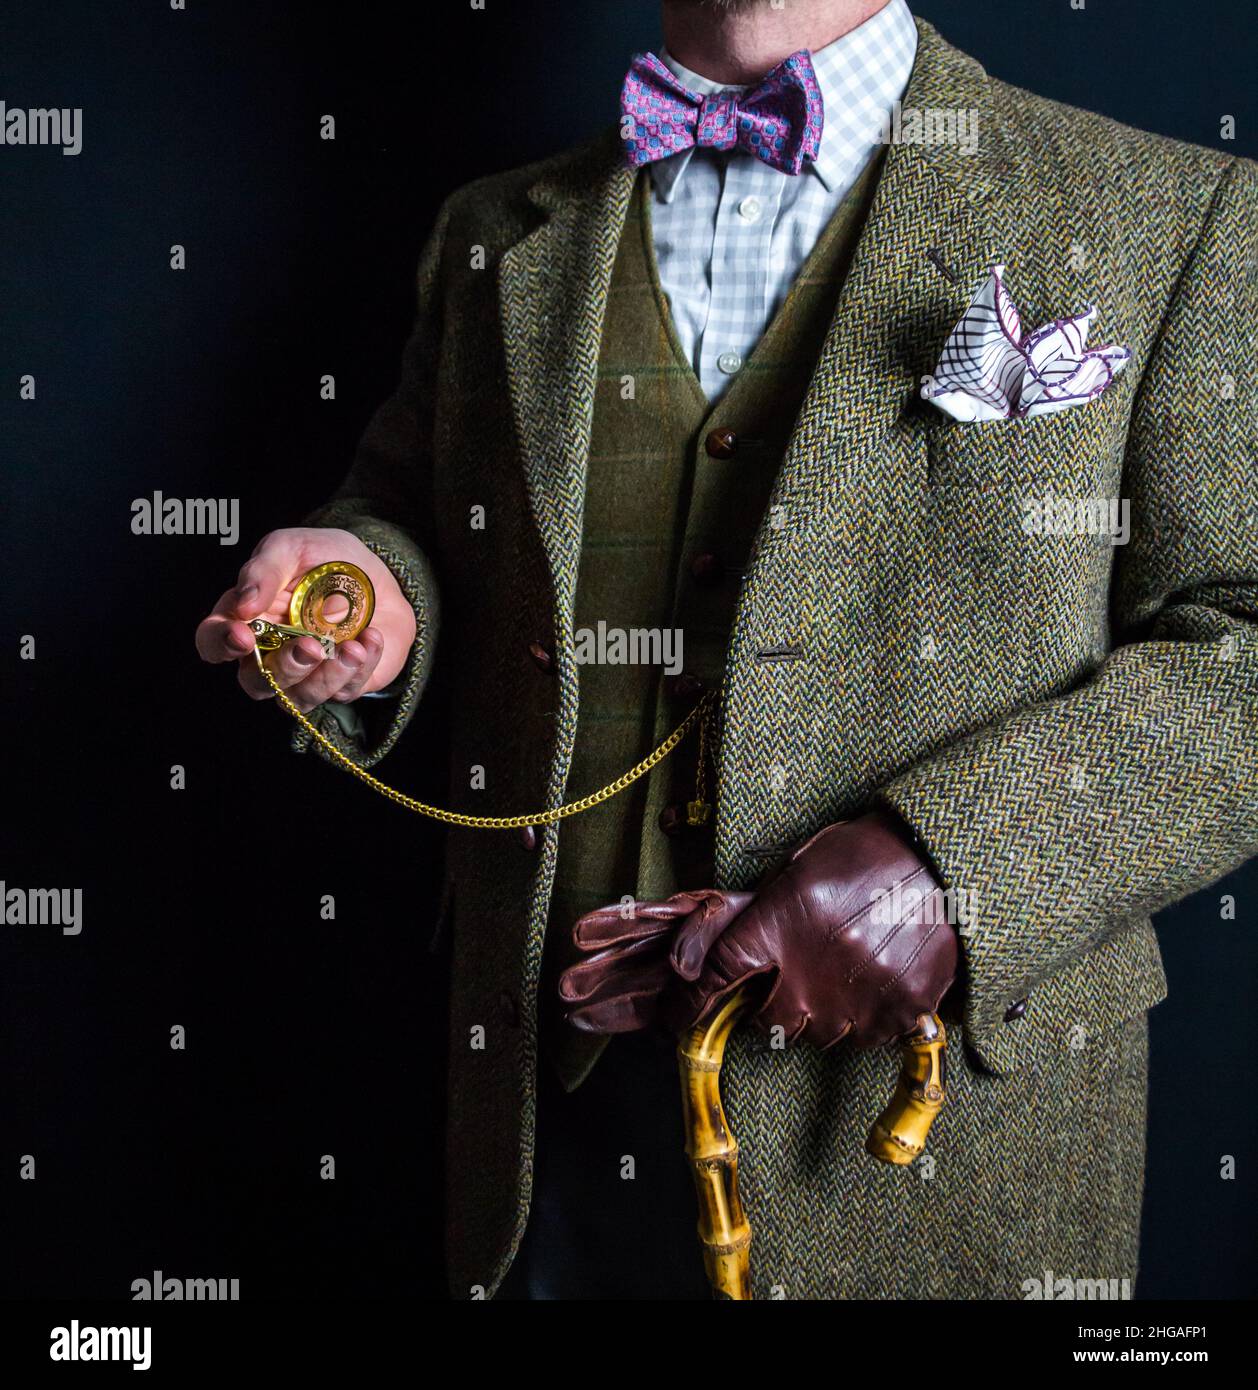 Portrait d'un homme anglais en costume tweed tenant une montre de poche dorée.Style vintage et mode rétro de gentleman britannique. Banque D'Images